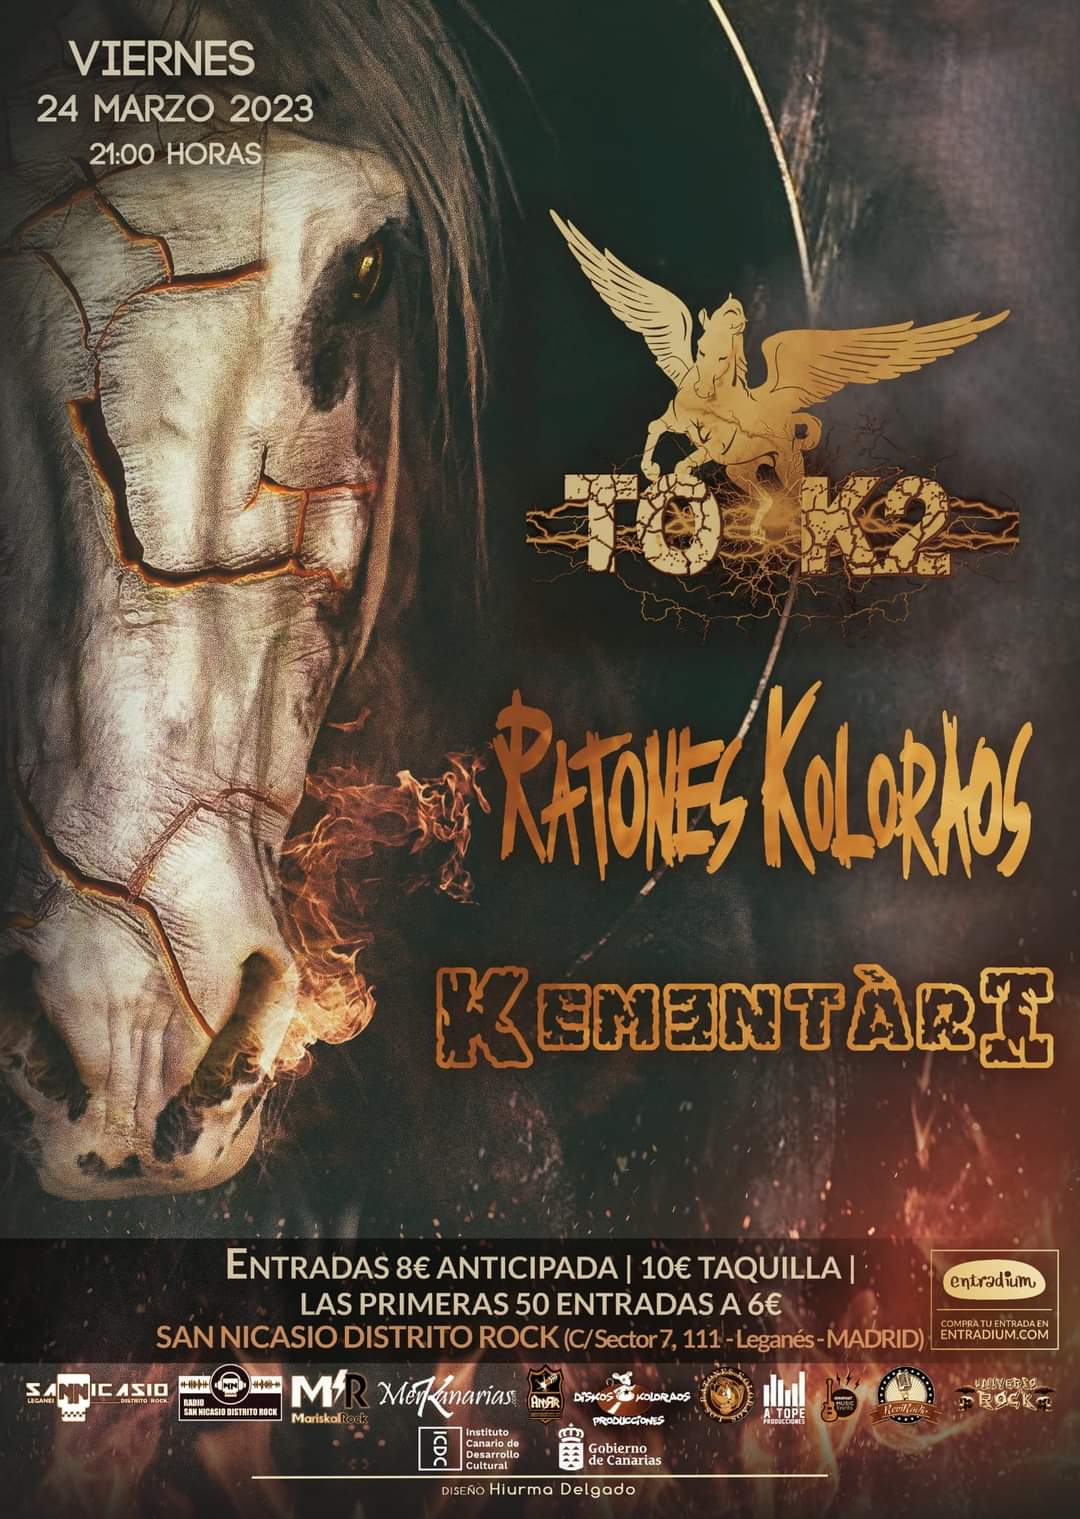 Ratones Koloraos + Tok2 + Kementari estarán actuando el 24 de marzo en Leganés (Madrid)